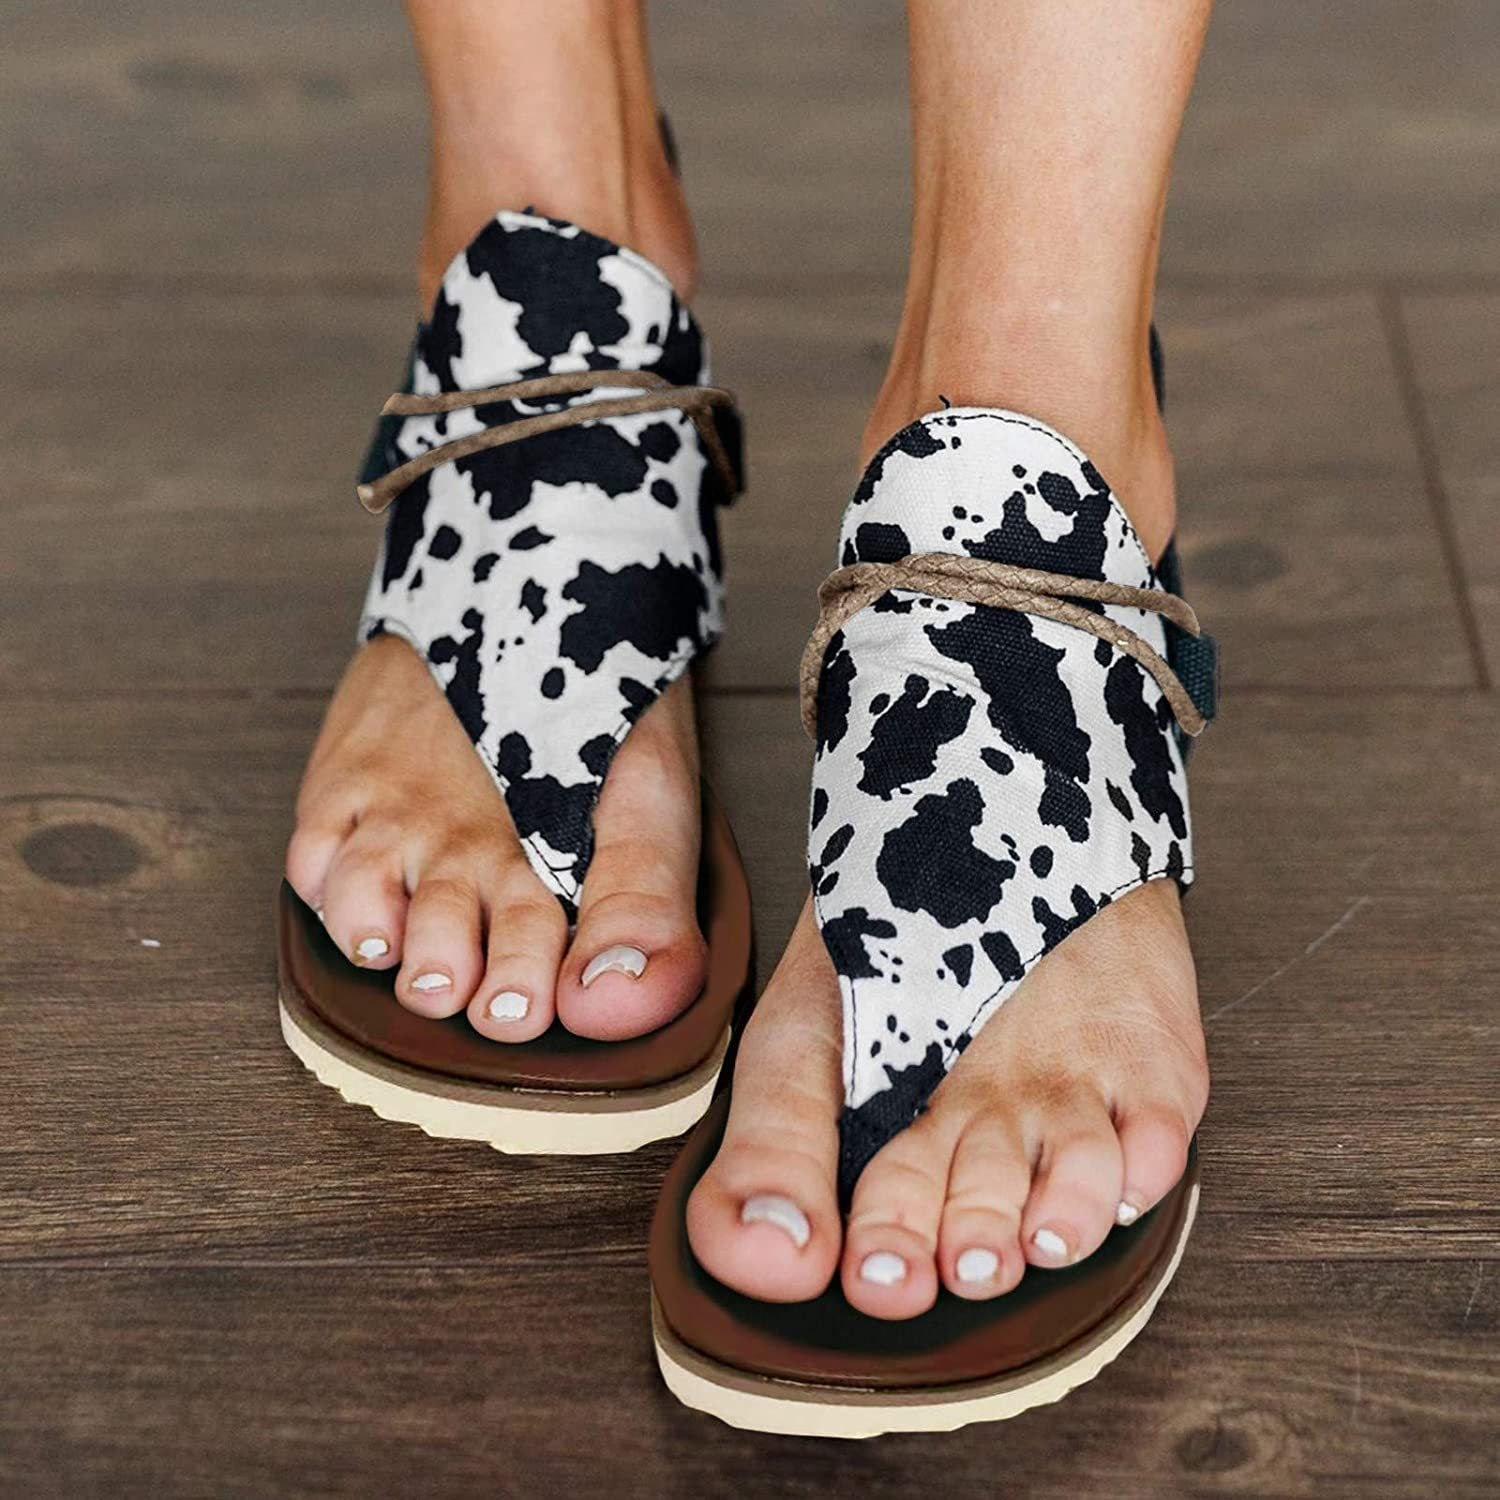 Winsummer Women Summer Sandals Retro Bohemian Back Zipper Leopard Sandals Beach Shoes T-Strap Roman Open-Toe Sandals